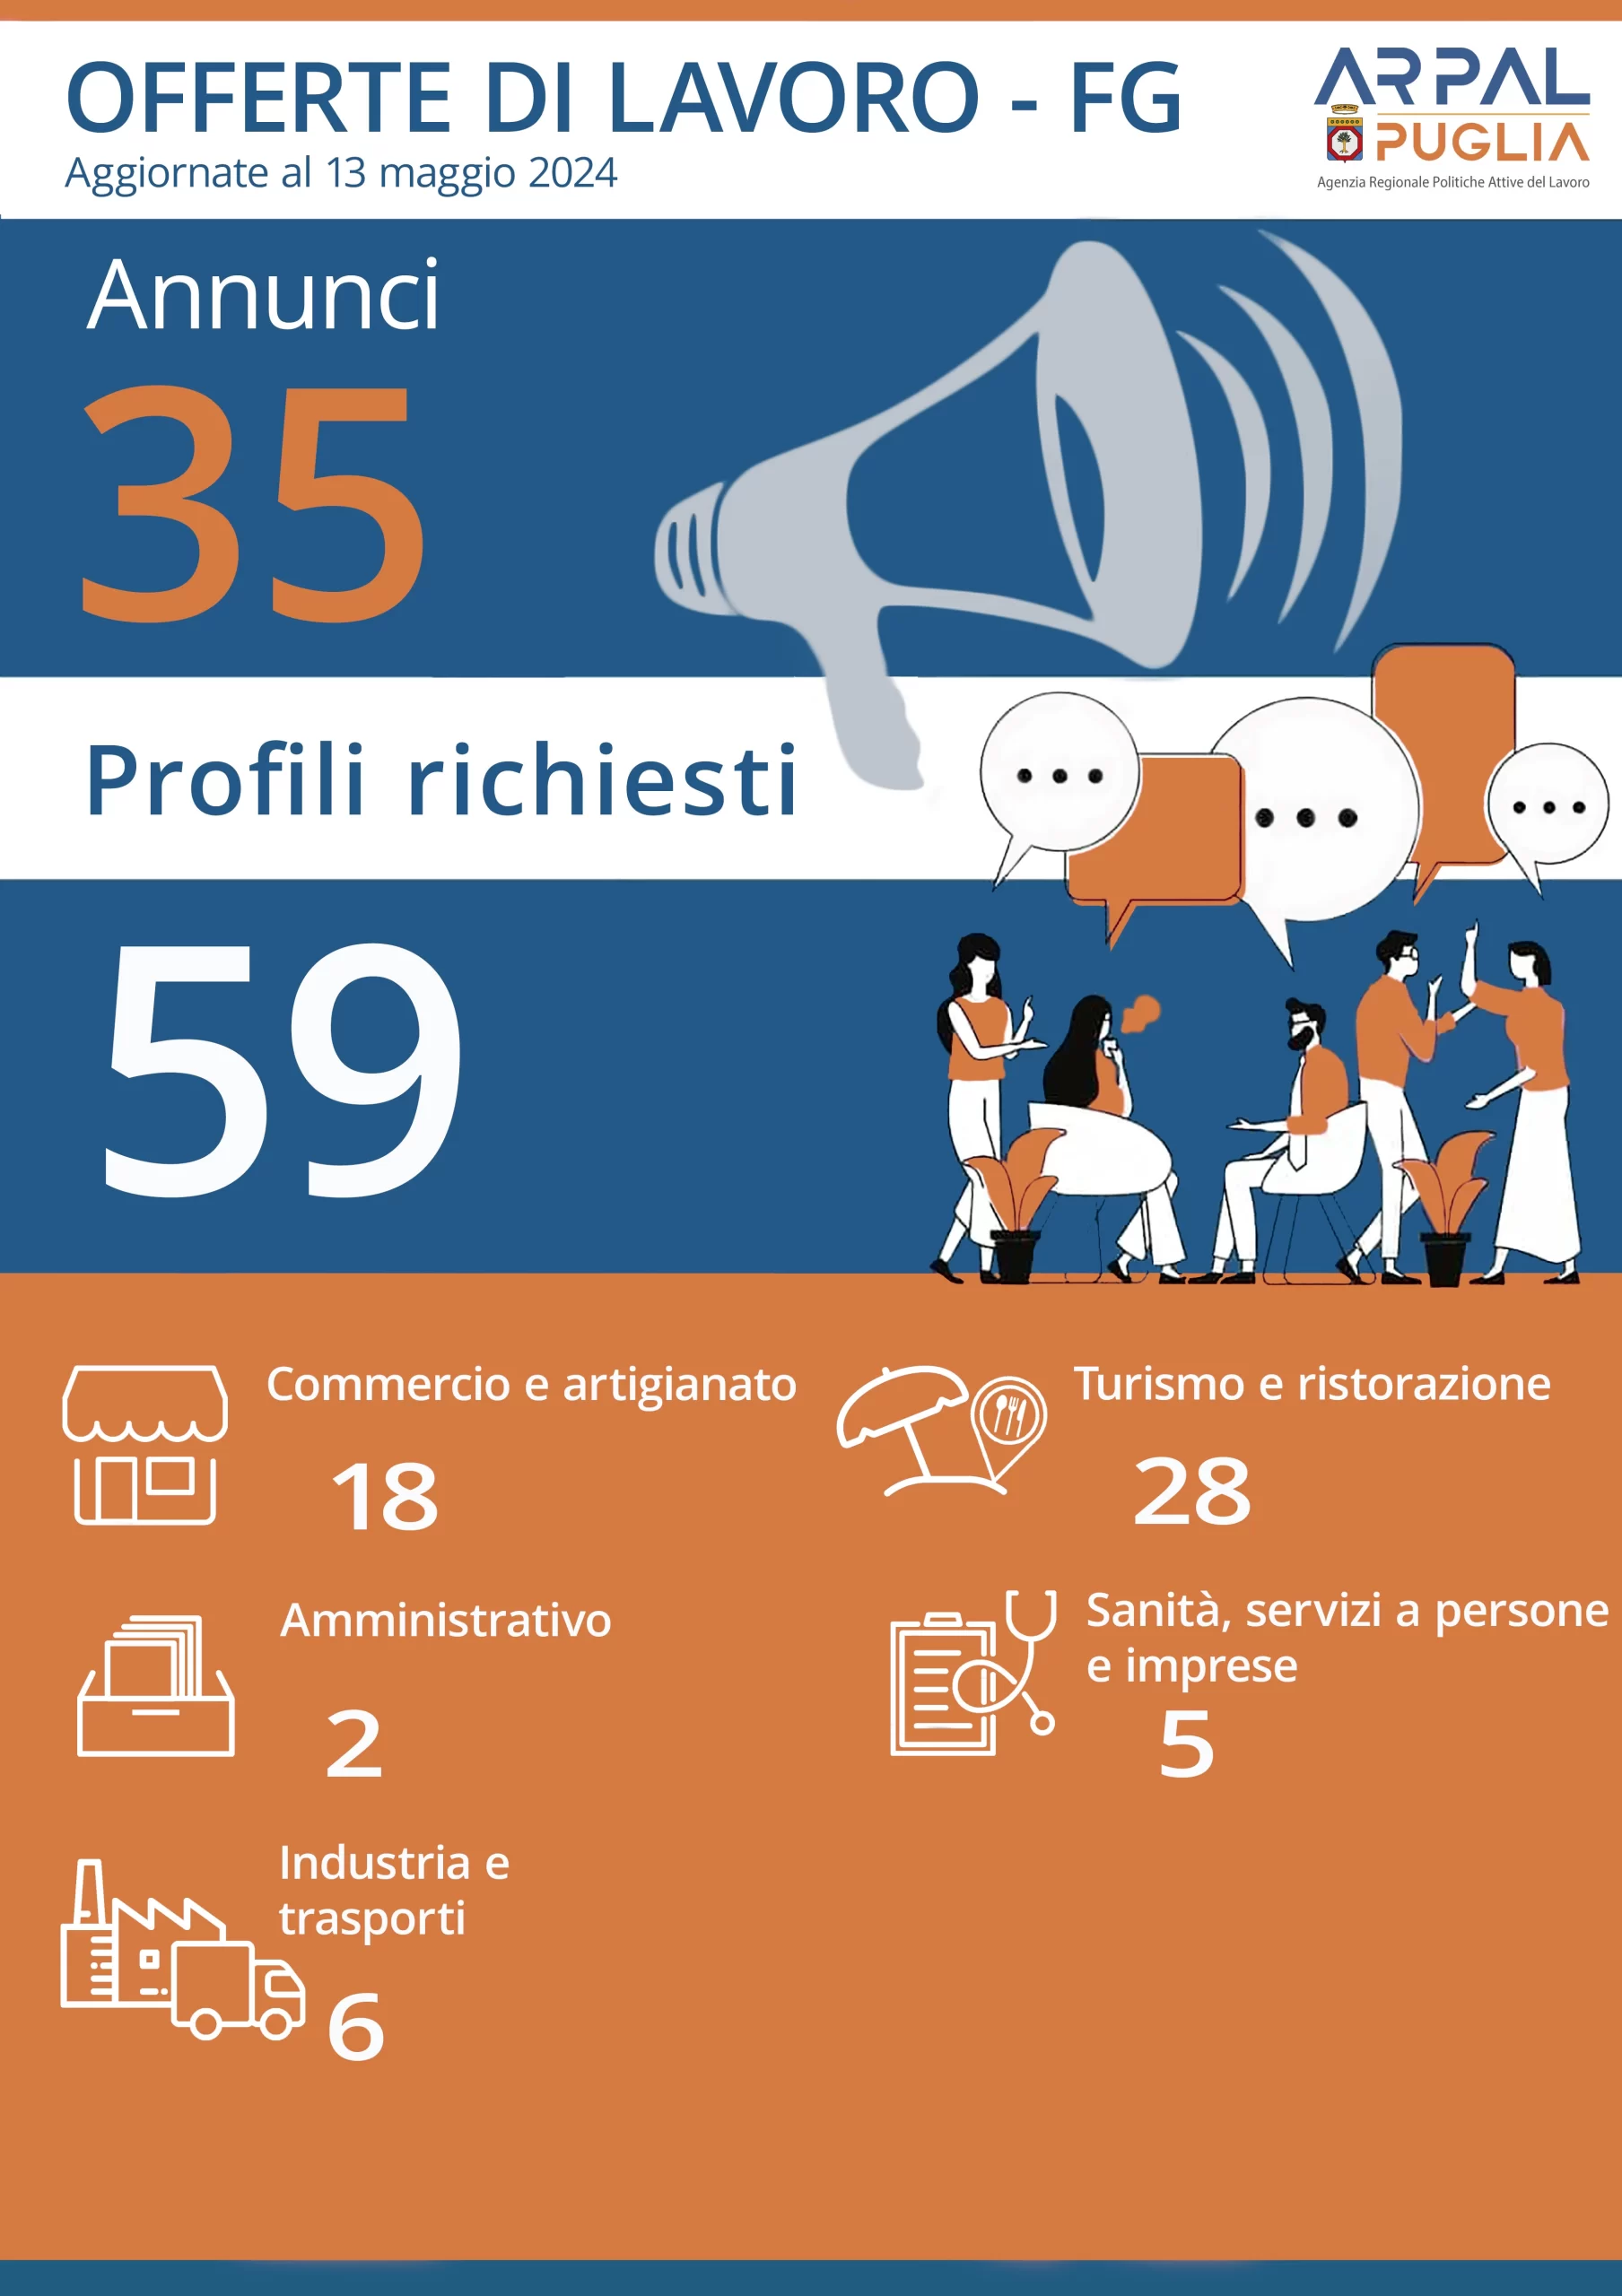 Offerte di lavoro: il report dei Centri per l’Impiego di Foggia e provincia